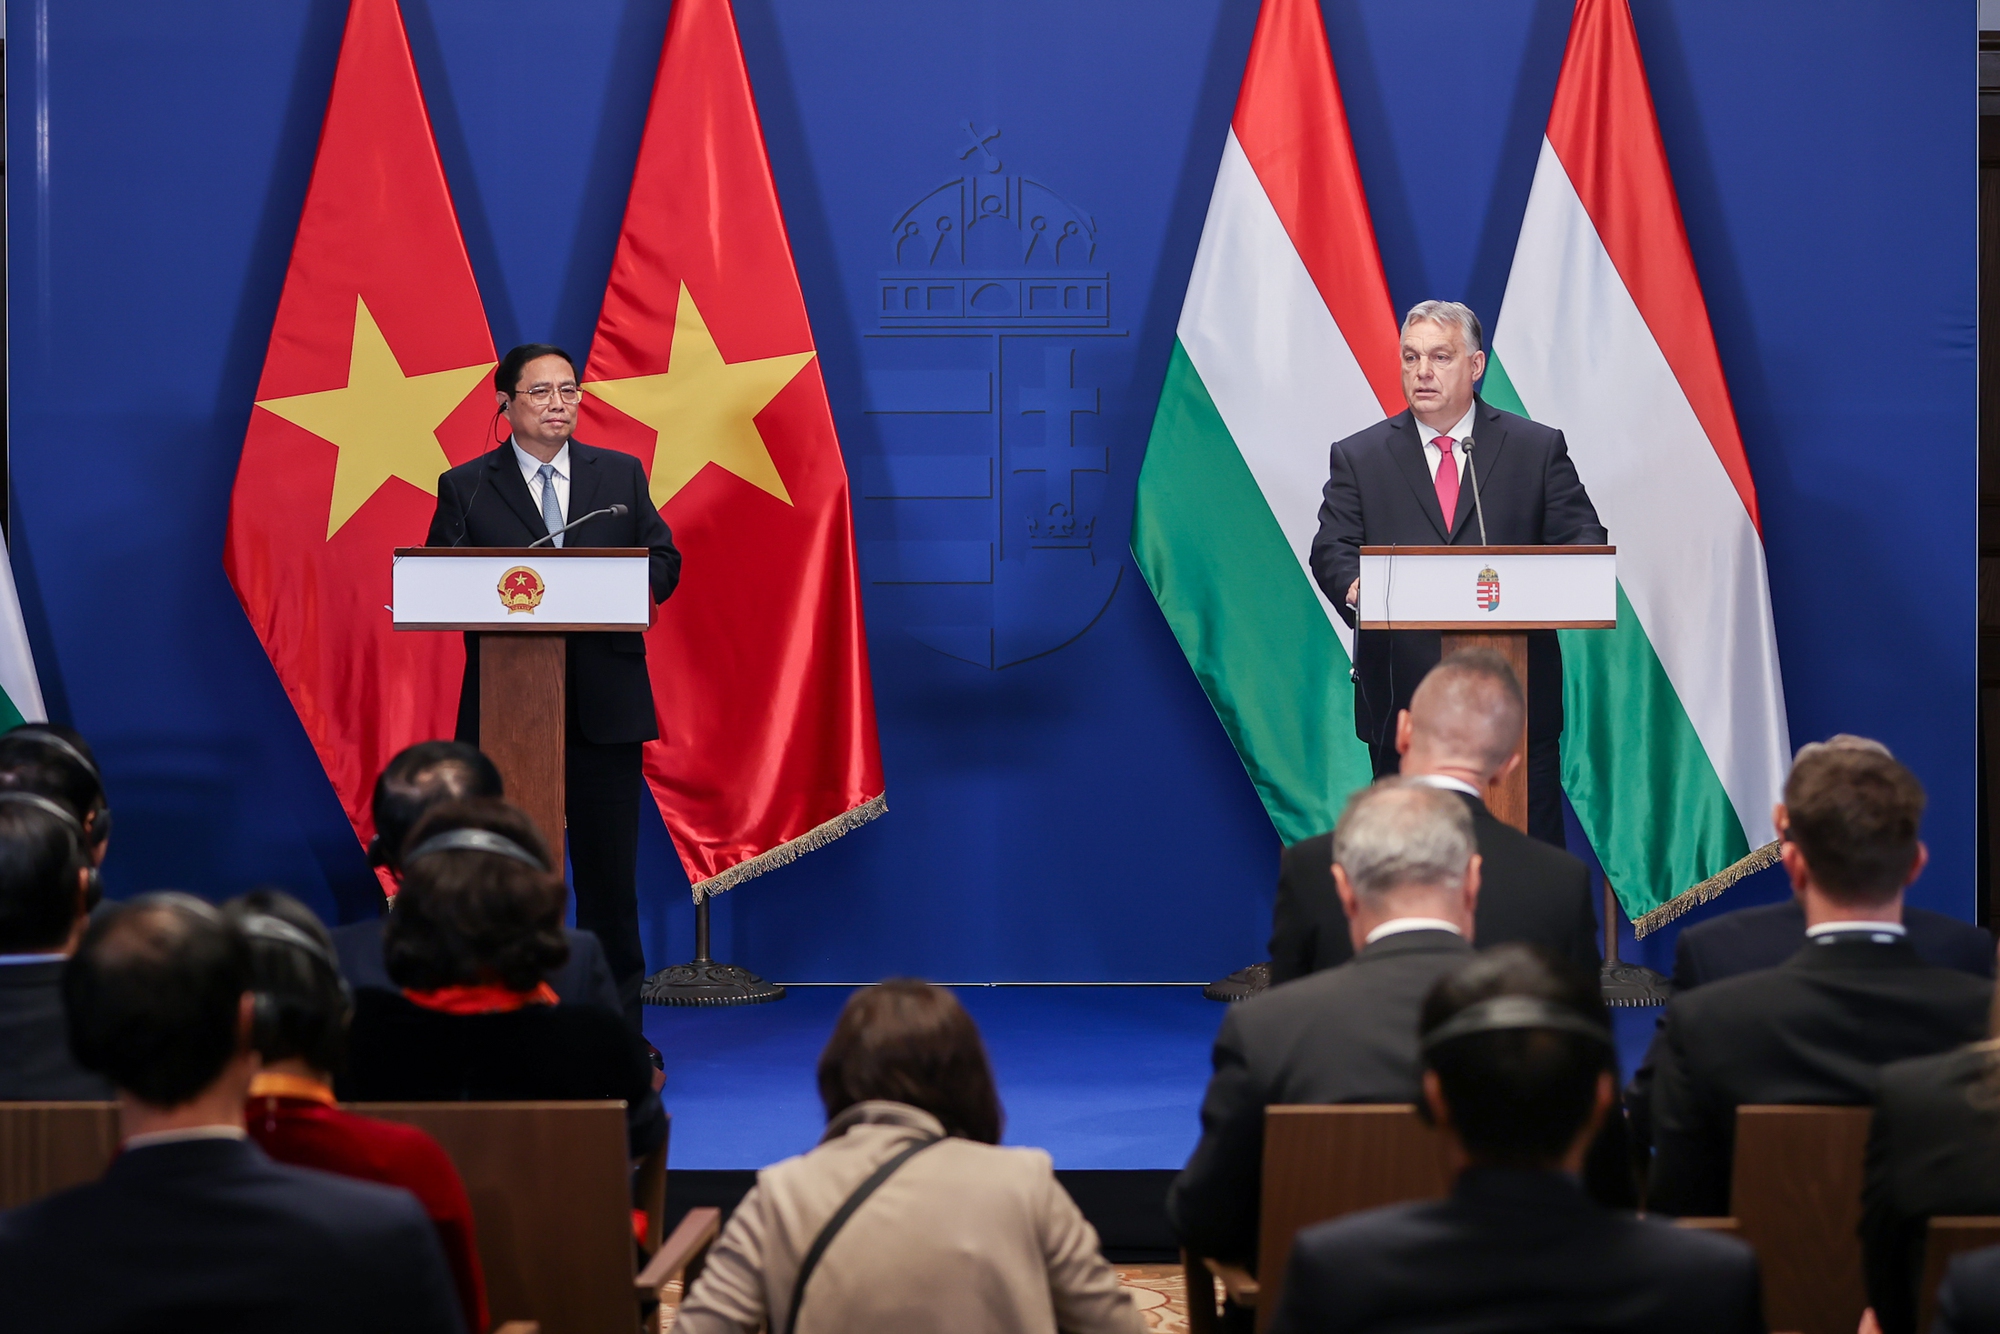 Thủ tướng Phạm Minh Chính và Thủ tướng Hungary Viktor Orbán gặp gỡ báo chí sau khi tiến hành hội đàm - Ảnh: VGP/Nhật Bắc